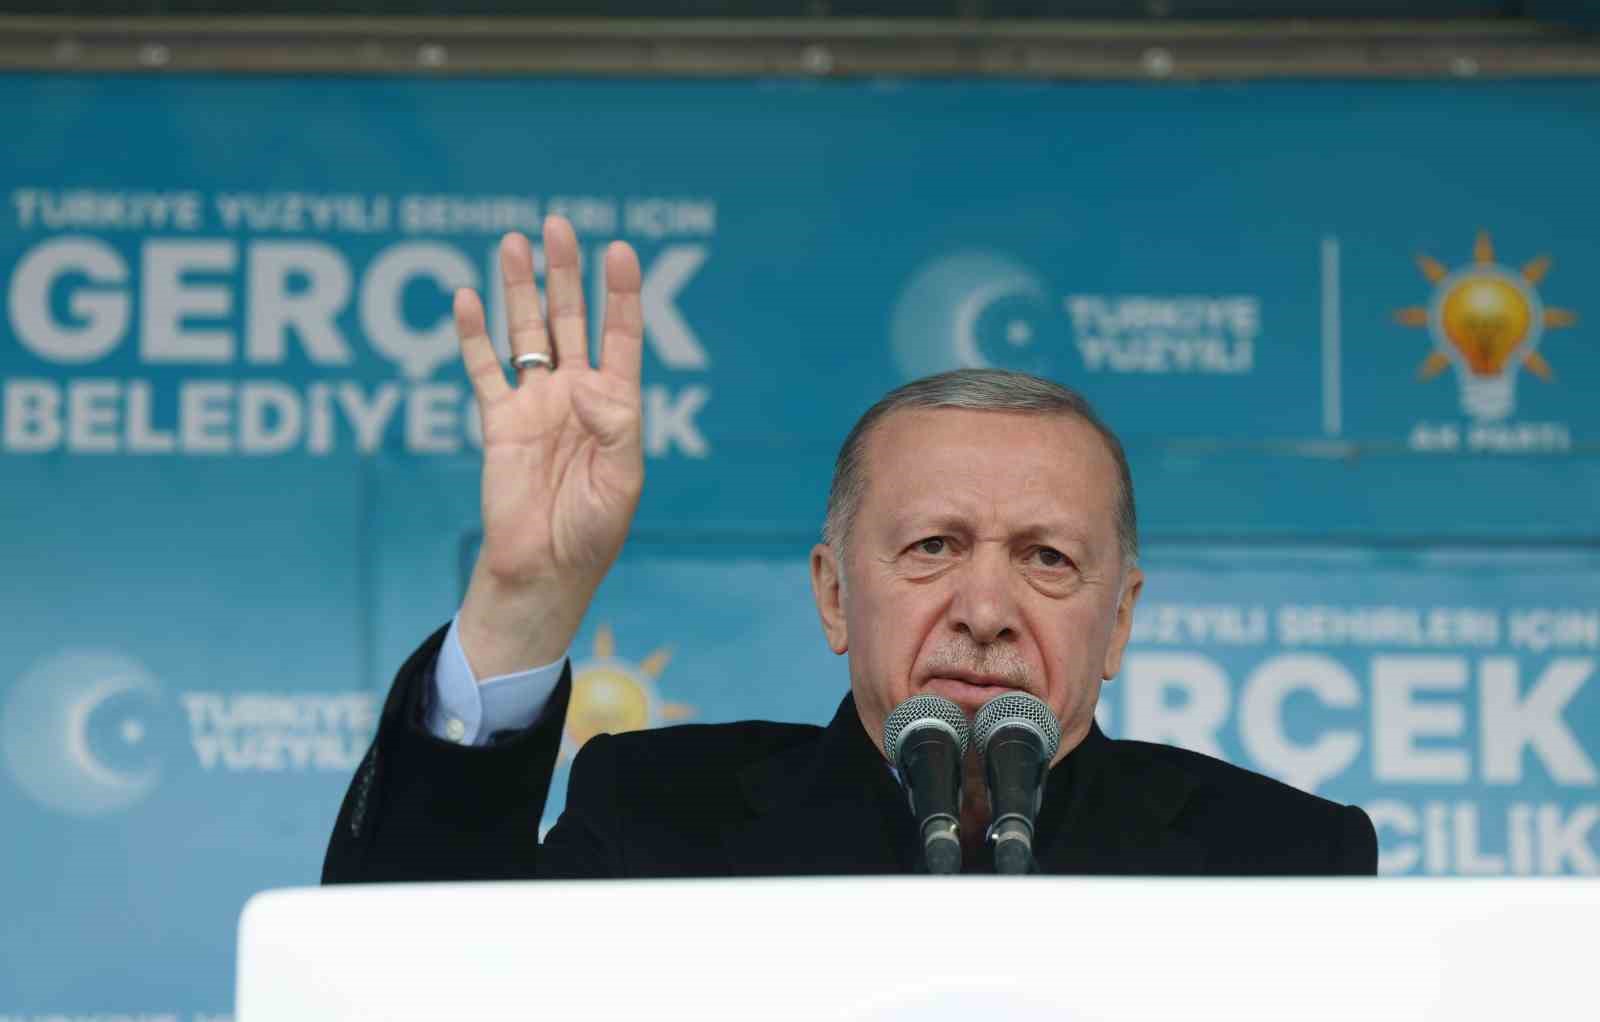 Cumhurbaşkanı Recep Tayyip Erdoğan: “Muhalefet emeklilerimizi bize karşı kışkırtmaya çalışıyor. Valizler dolusu dolarlar, eurolar nereden geldi nereye gitti belli değil. Gelin bunu da açıklayın. Emeklilerin kara paranın hesabını veremeyenlerin sözlerine i